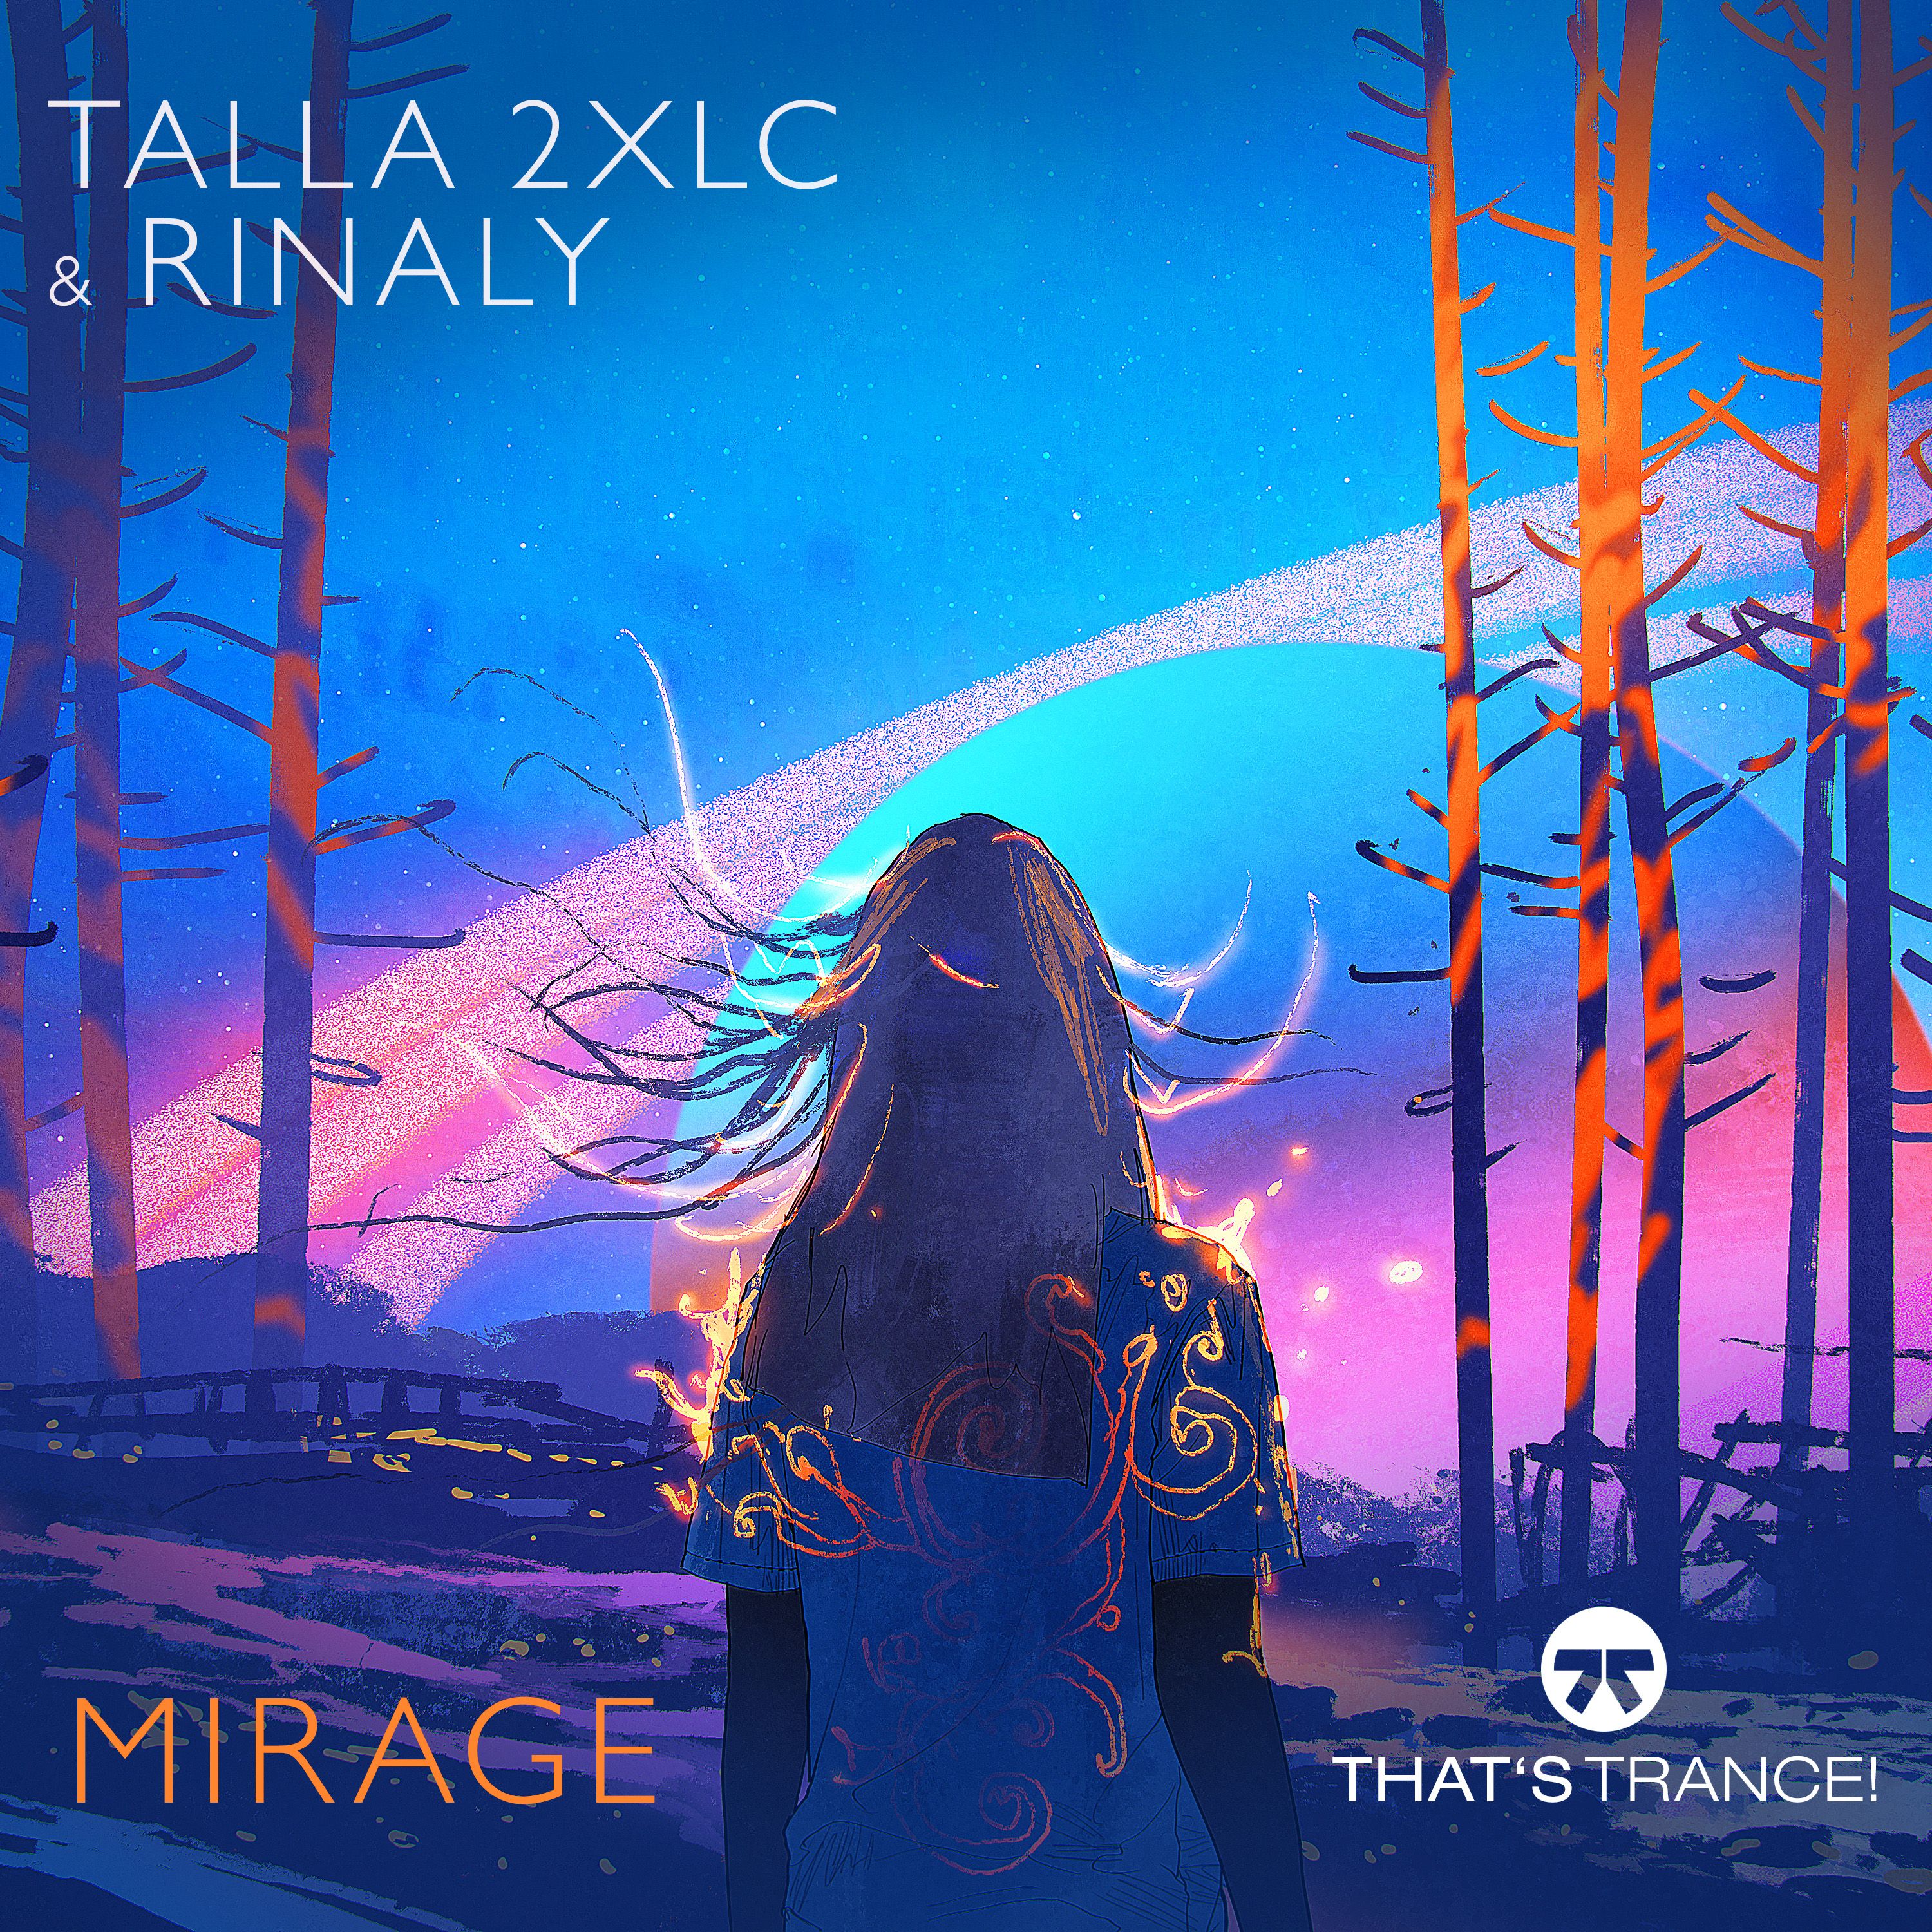 Talla 2XLC & Rinaly - Mirage [2m30s Cut]